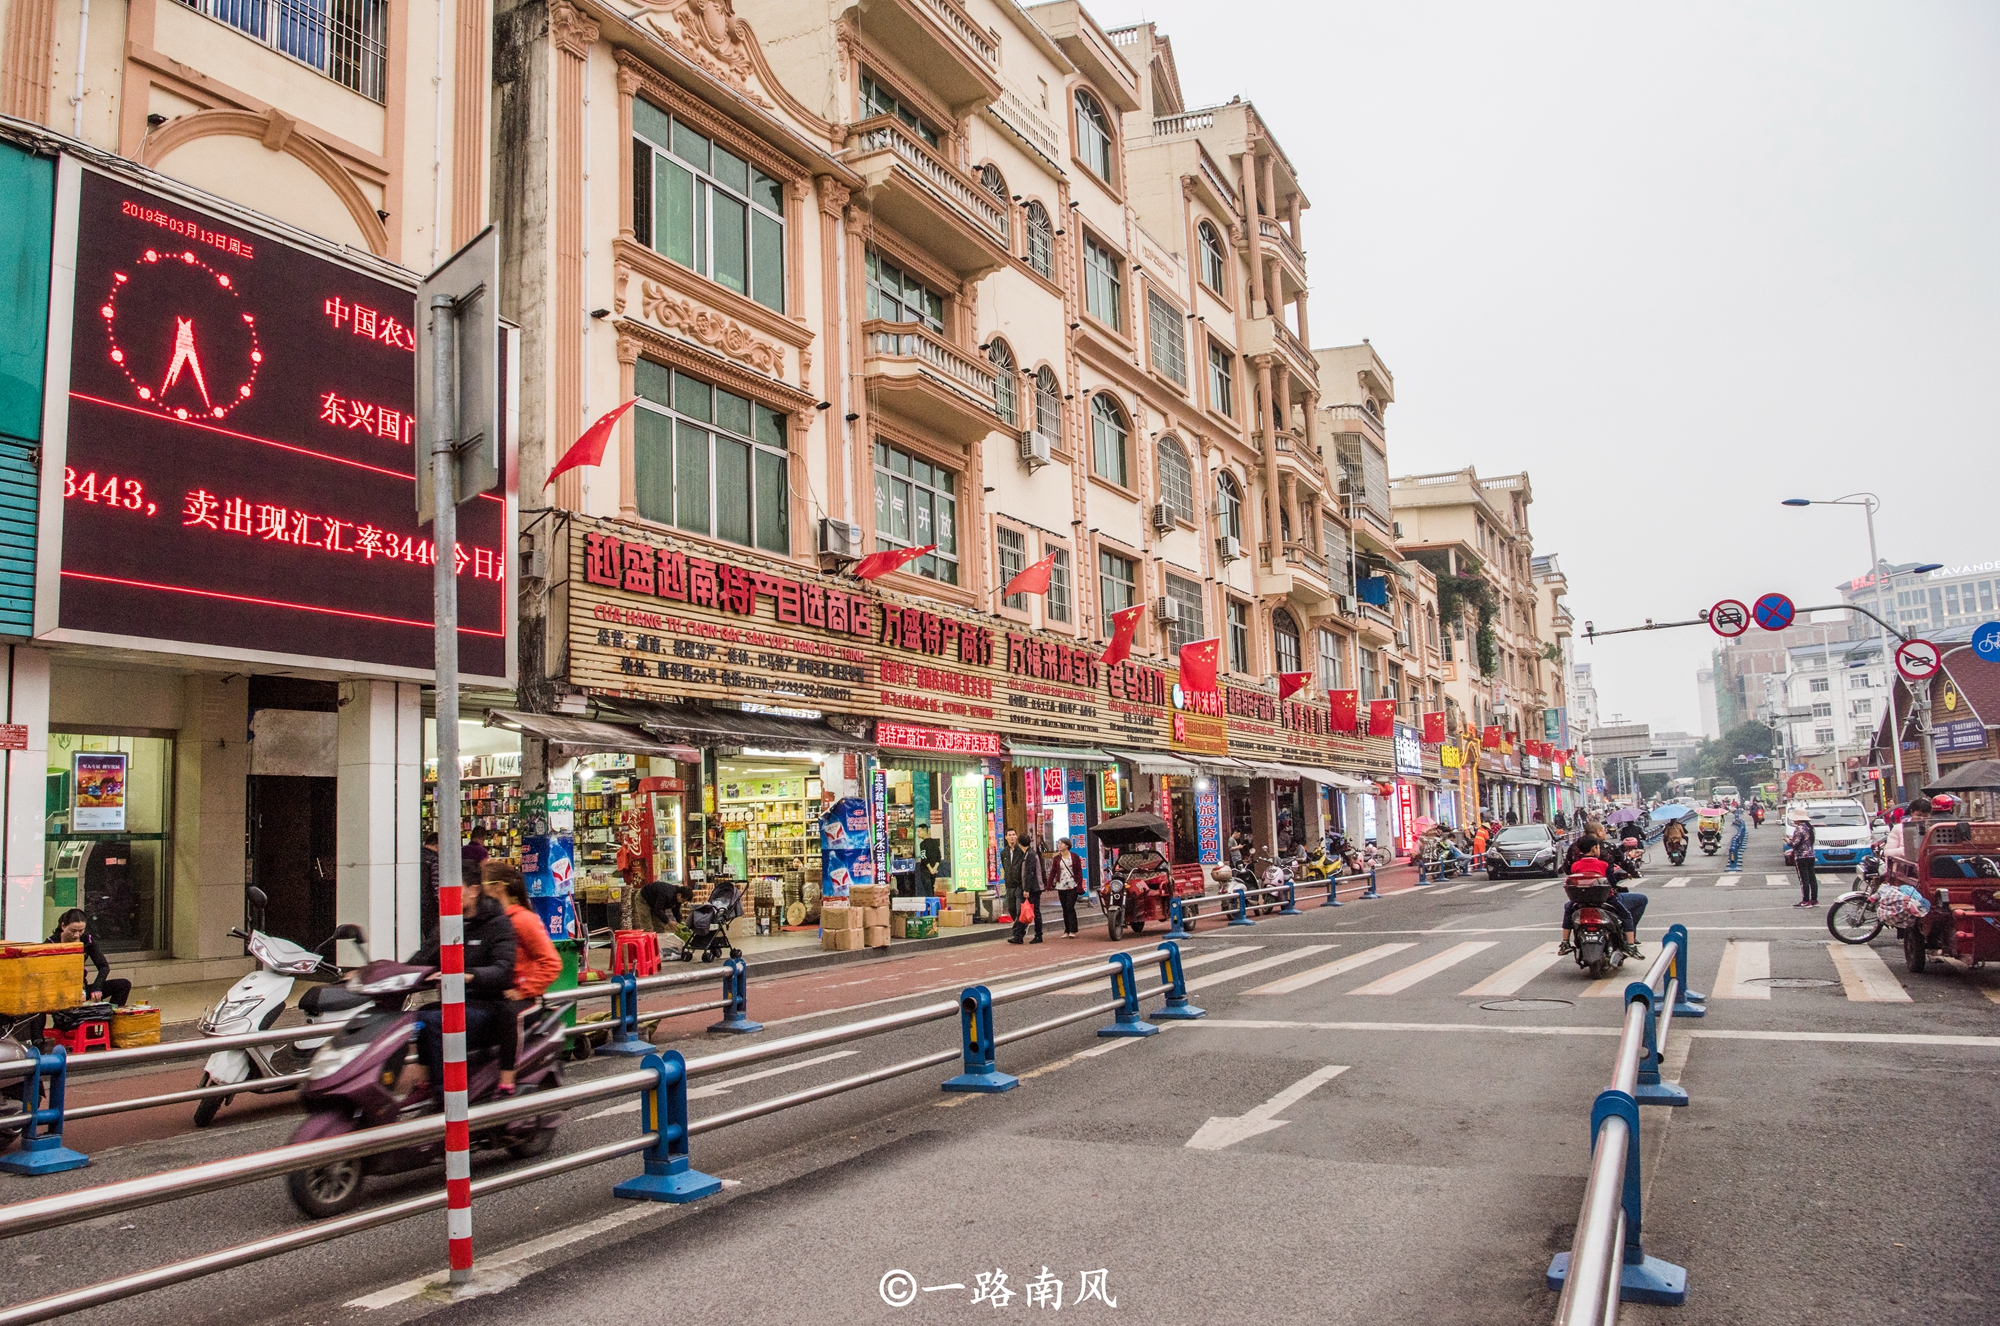 原创实拍广西东兴边境,街上的男人戴绿帽,商场卖越南货!